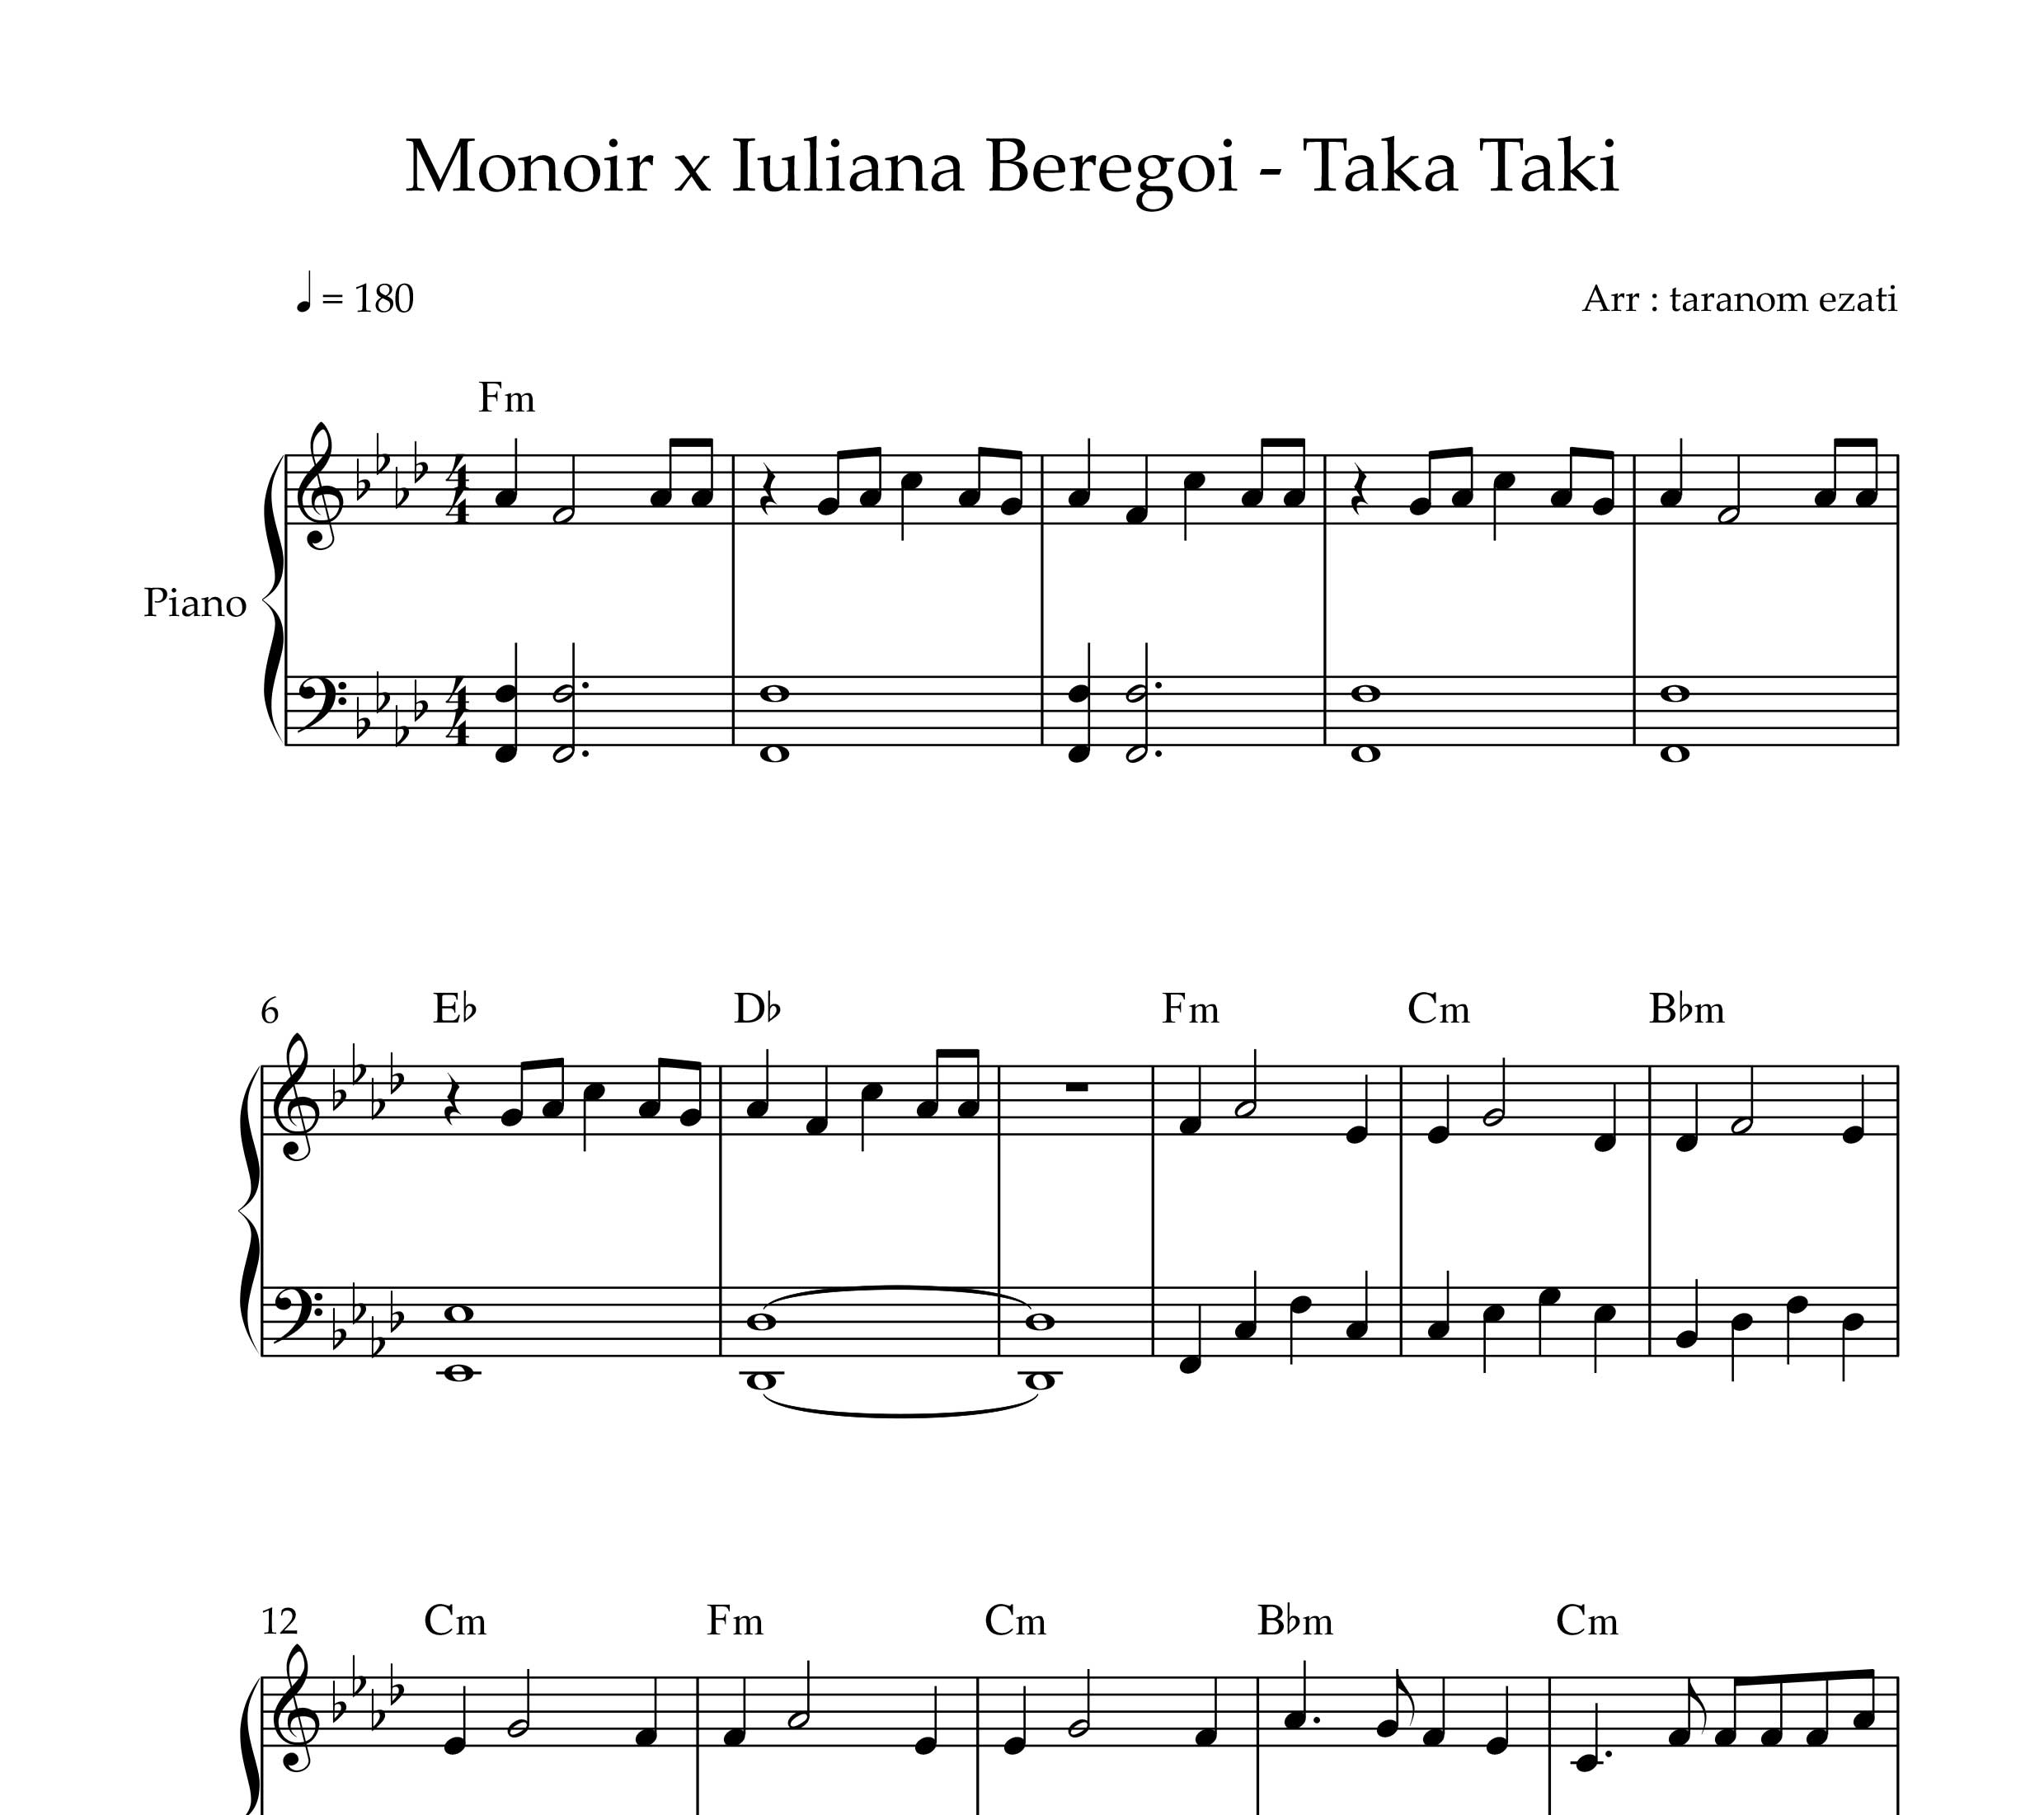 نت پیانو taka taki از monoir x Iuliana beregoi